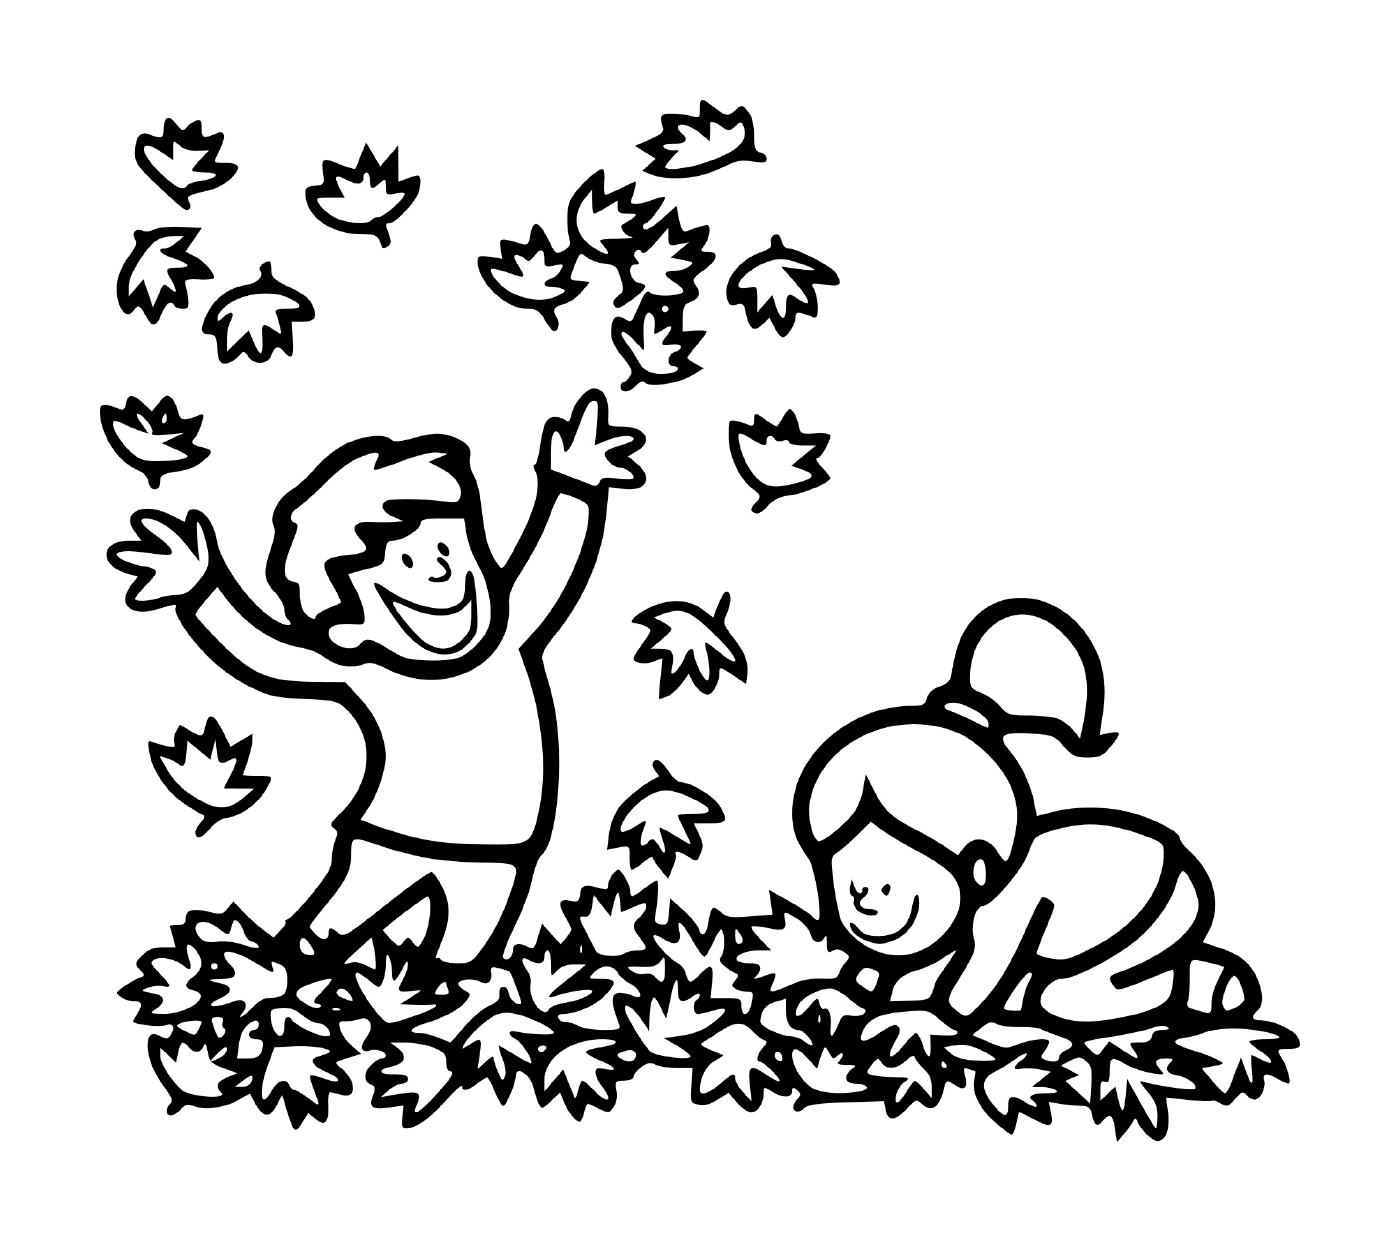   Un garçon et une fille jouant dans les feuilles 